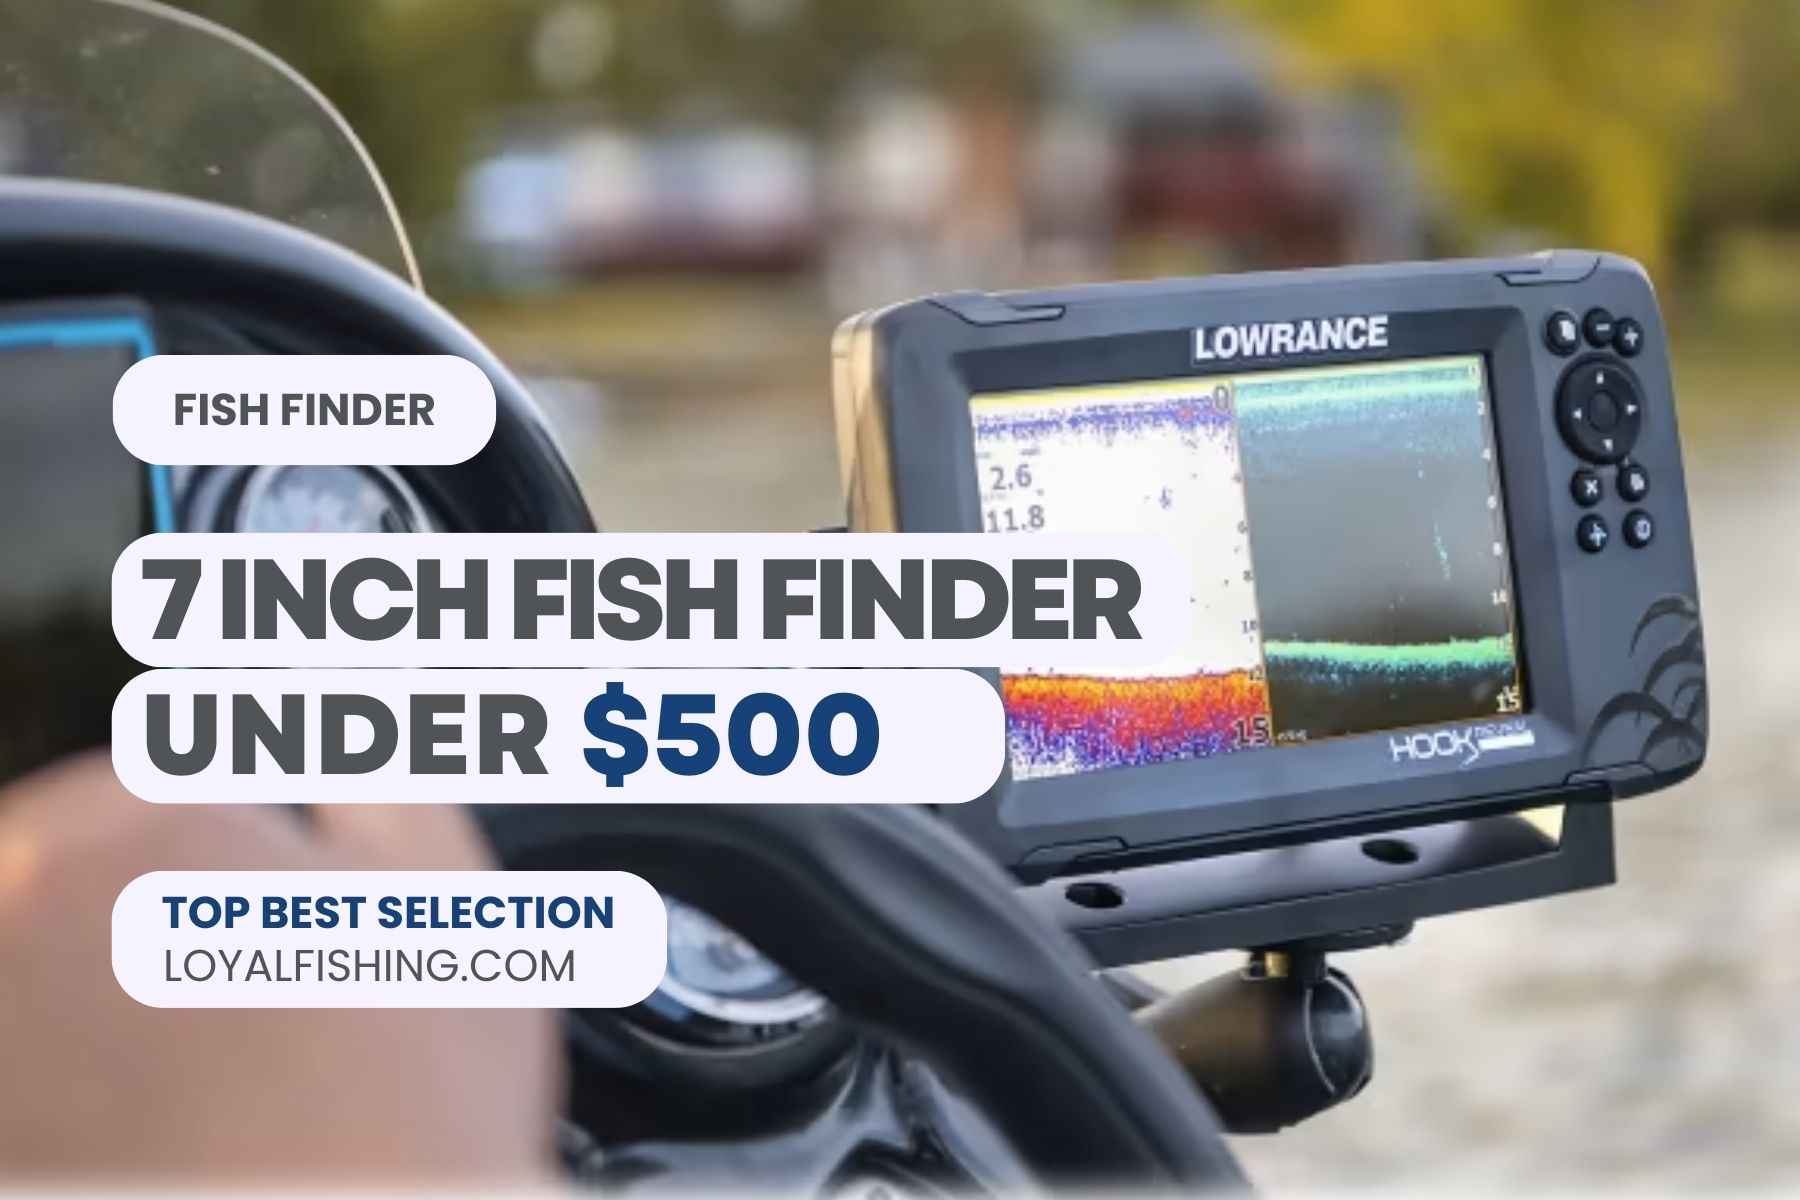 7 inch Fish Finder under 500